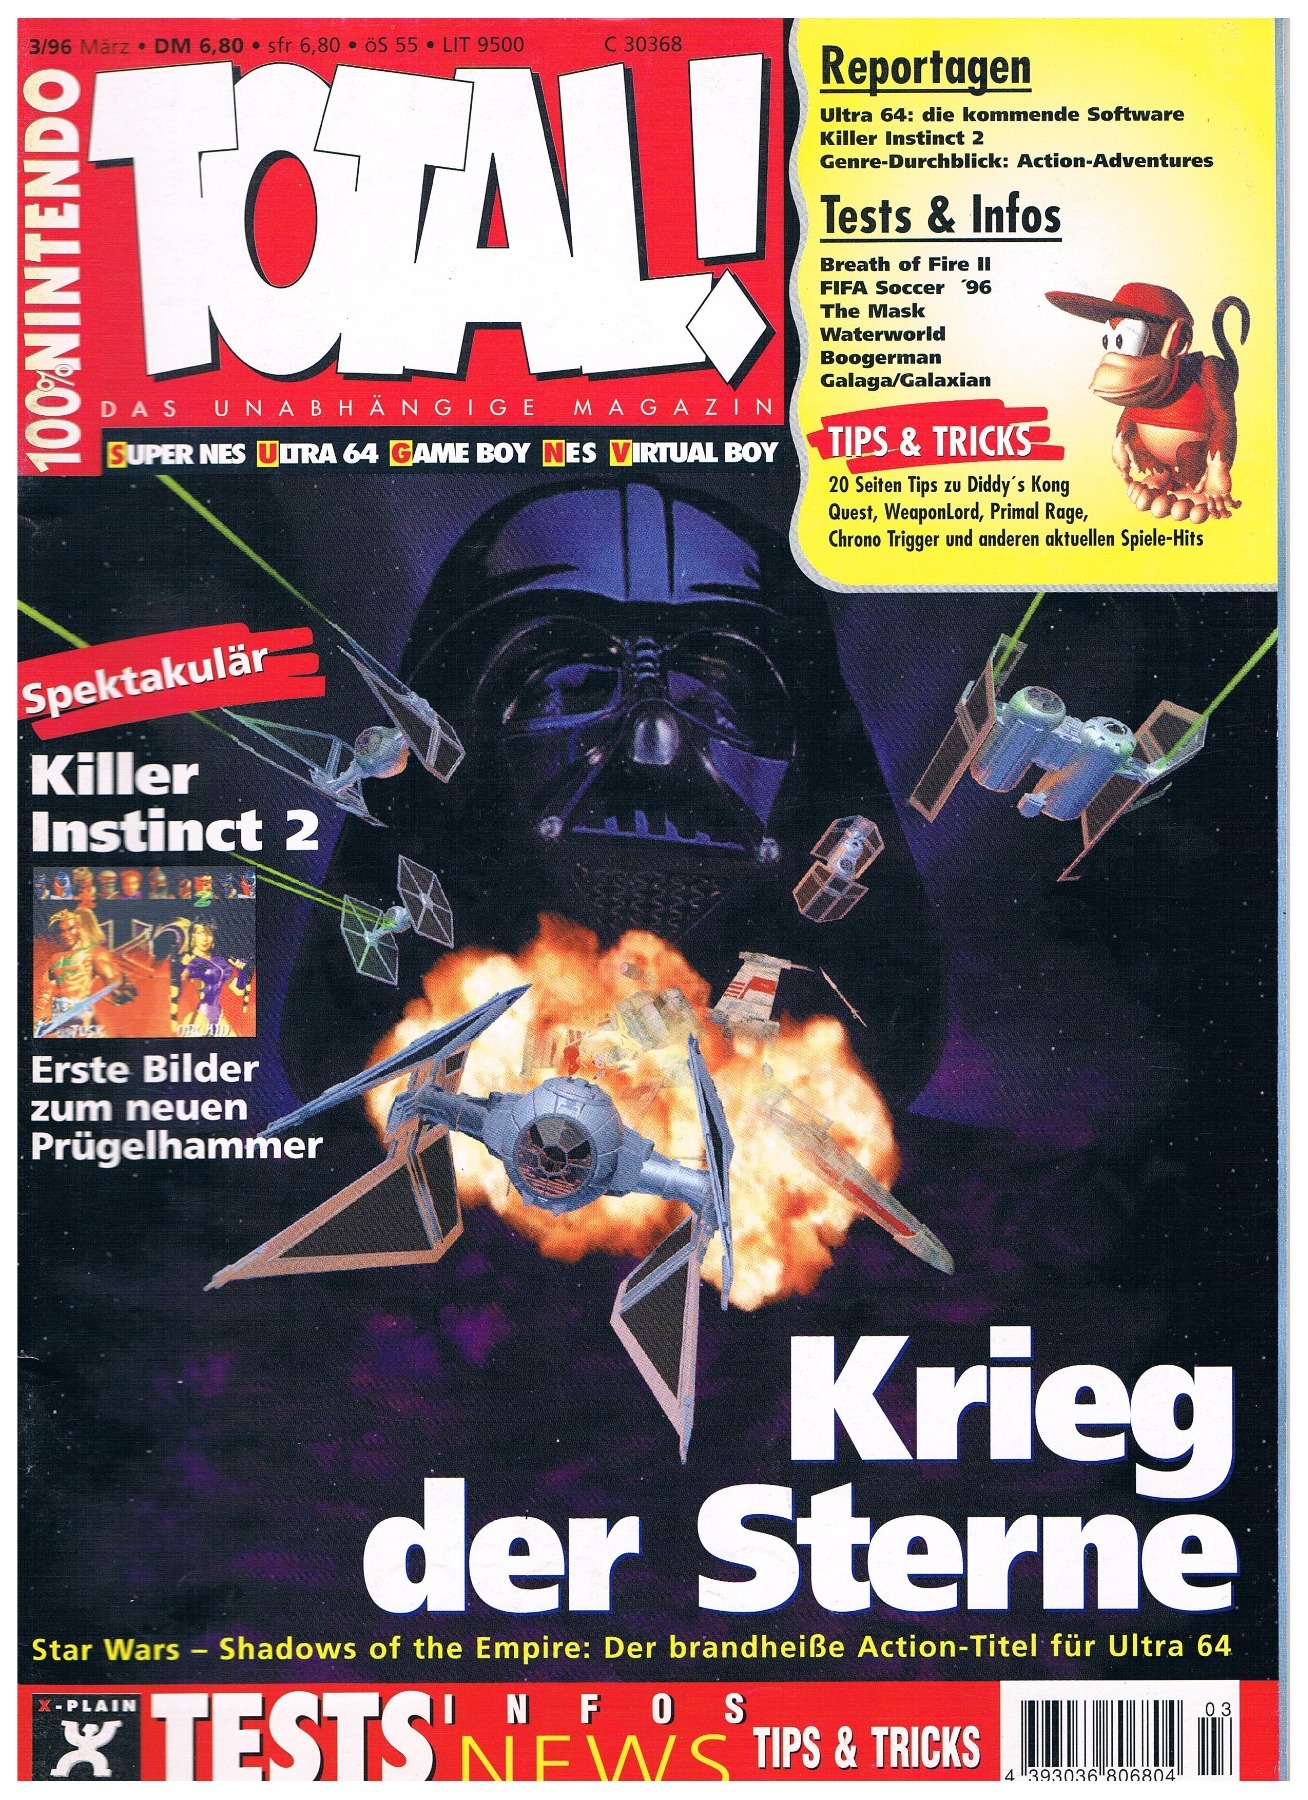 TOTAL Das unabhängige Magazin - 100% Nintendo - Ausgabe 3/96 1996